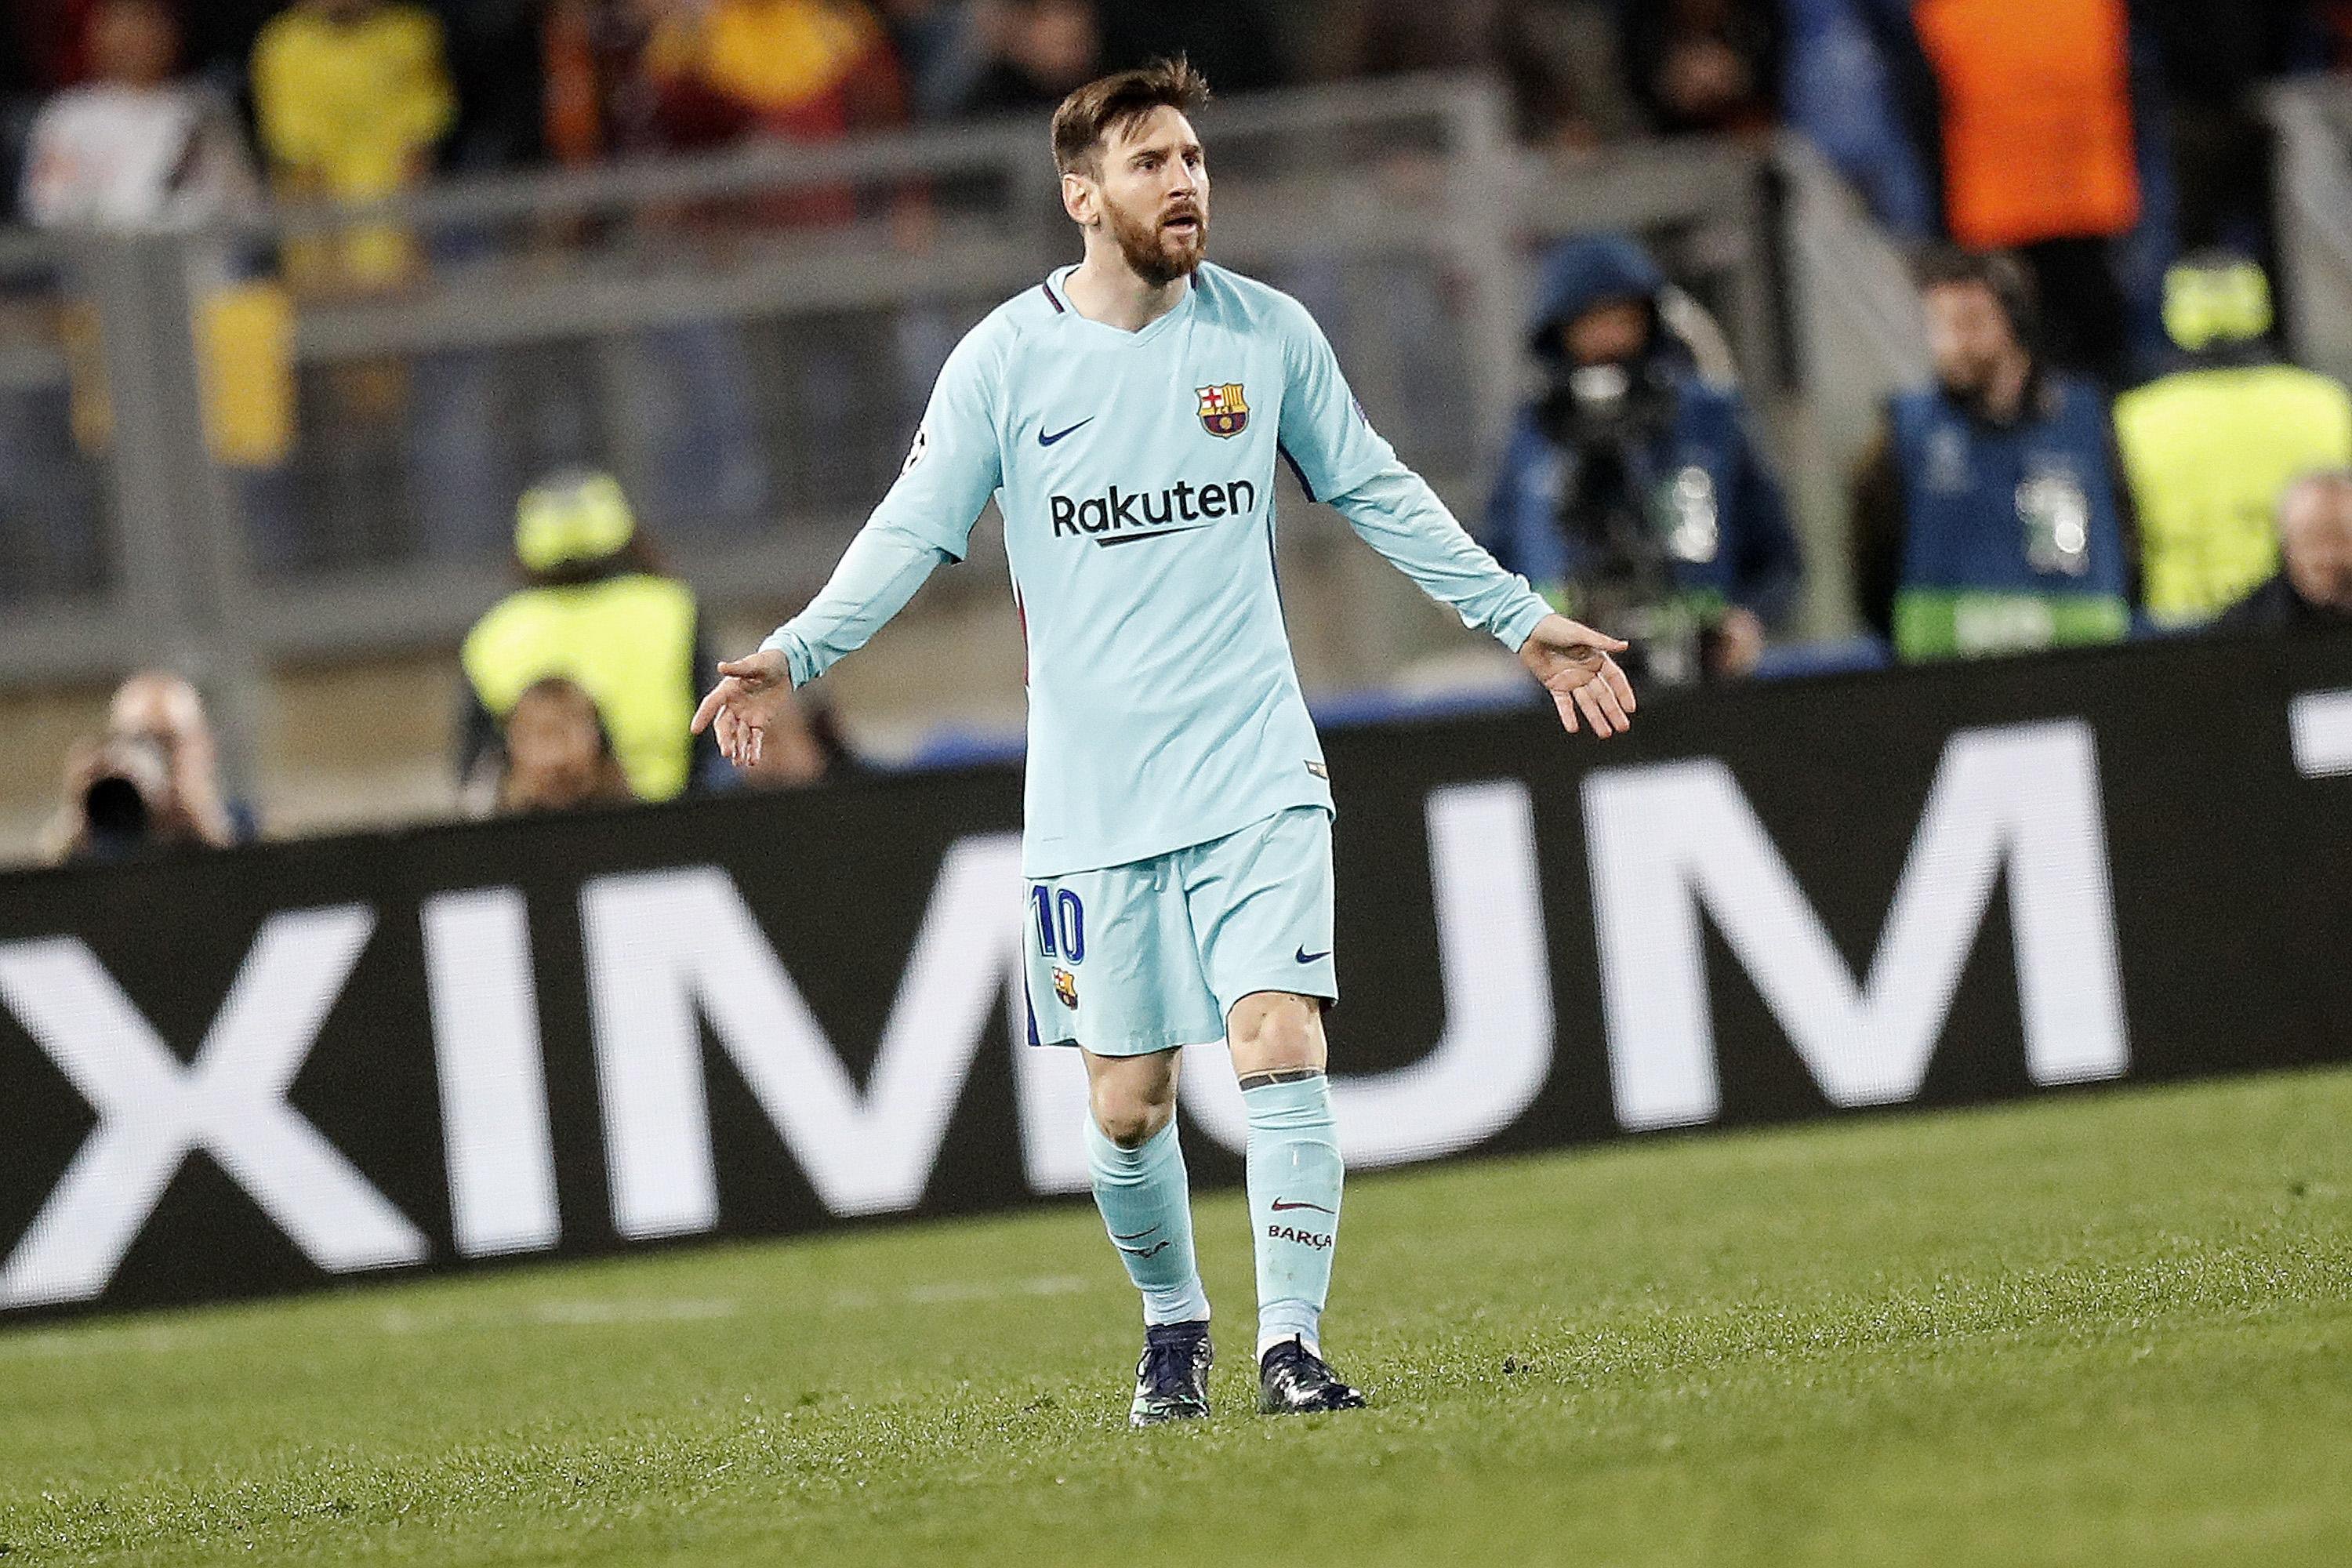 El Barça torna a decebre Leo Messi